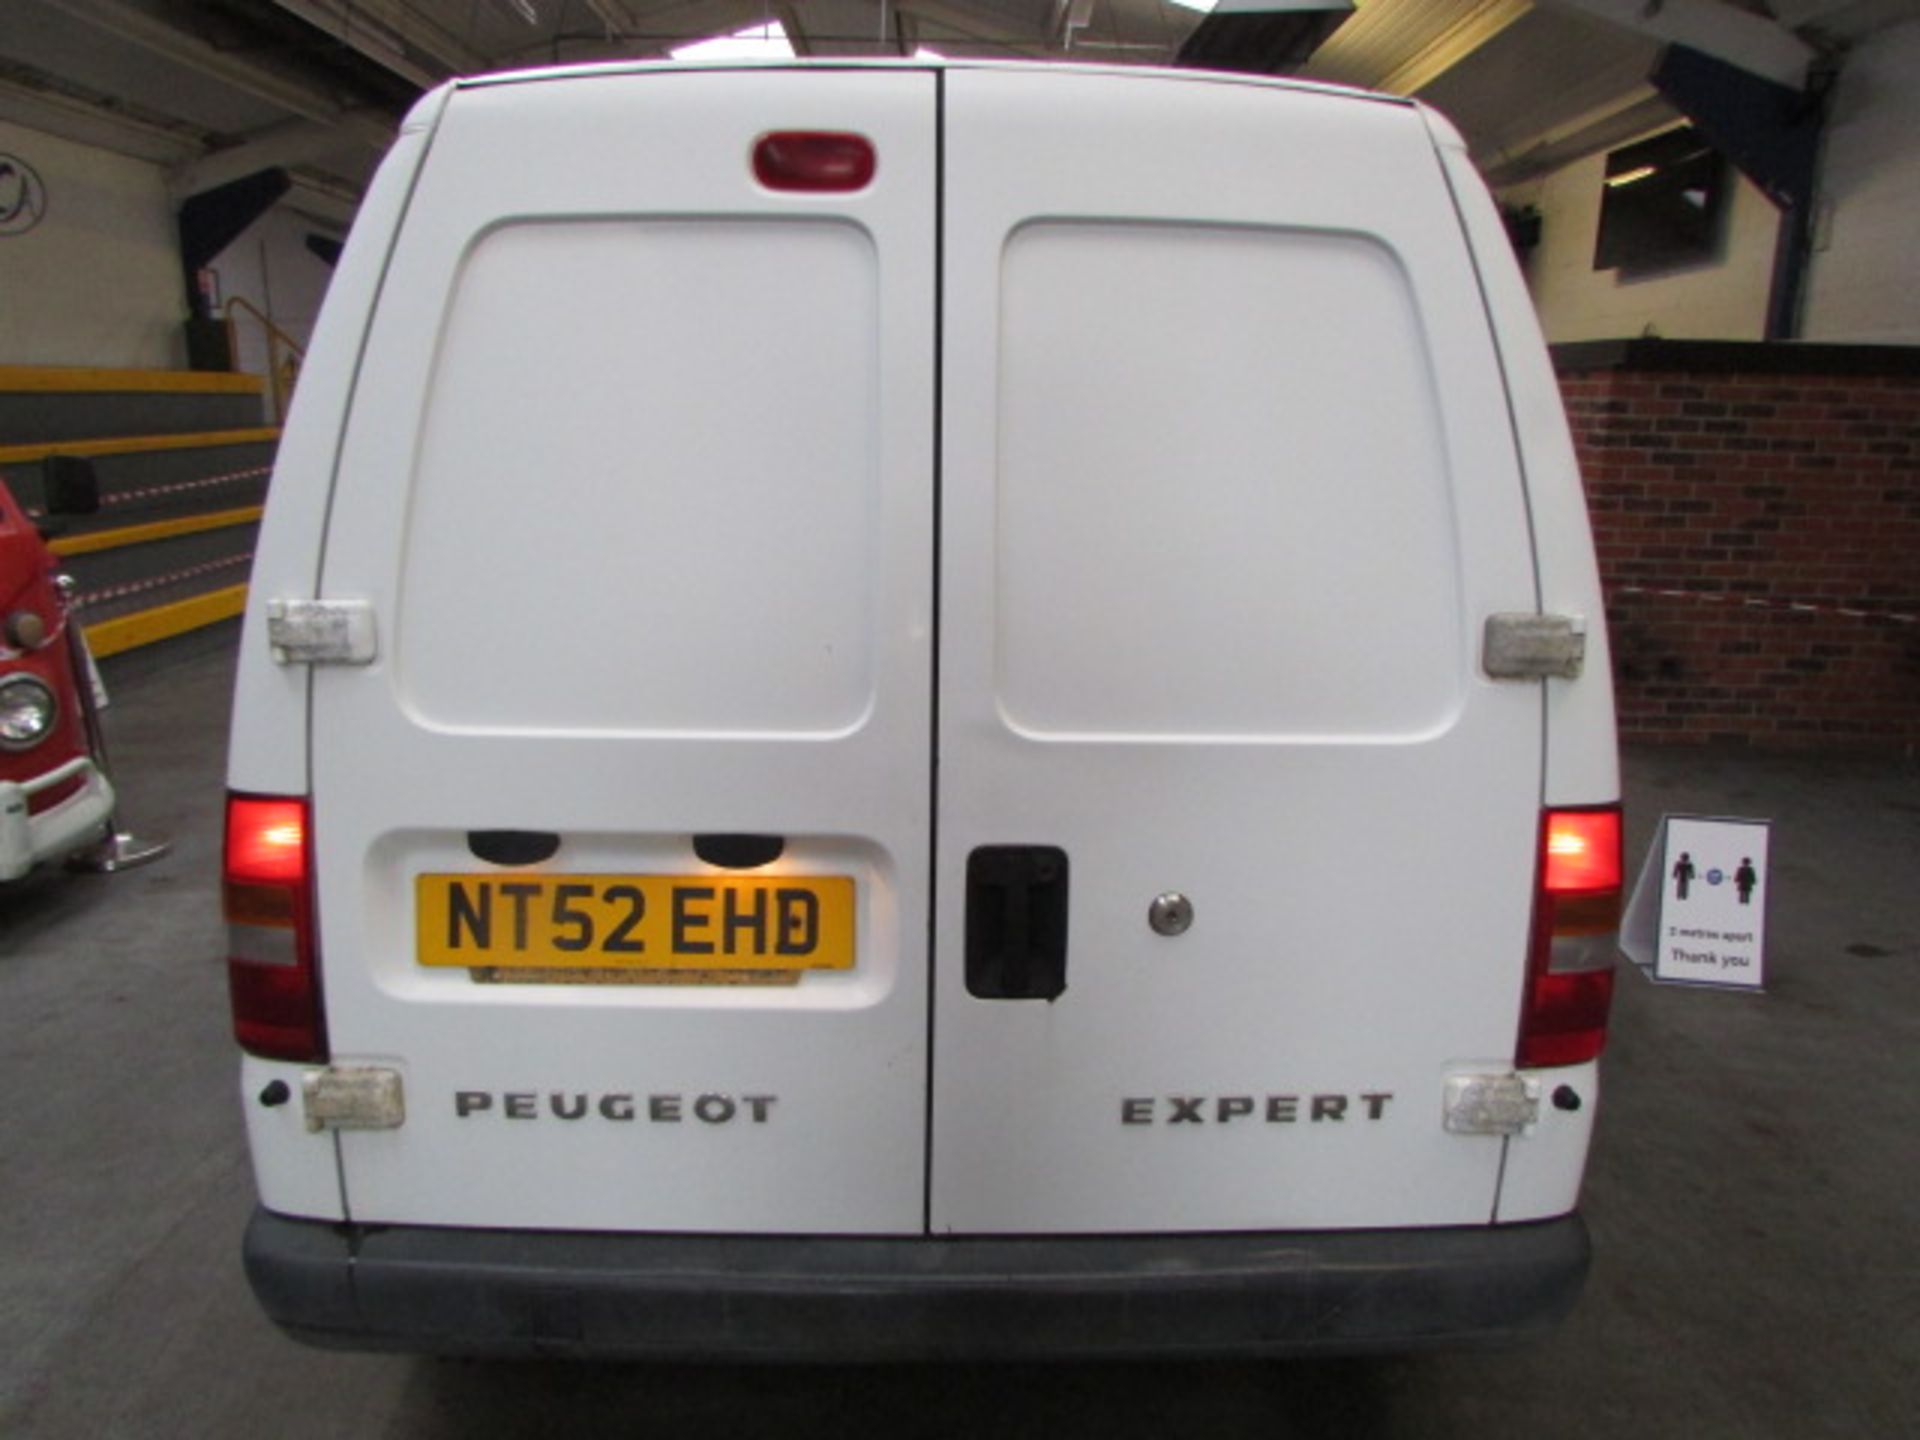 52 03 Peugeot Expert Diesel - Image 3 of 9